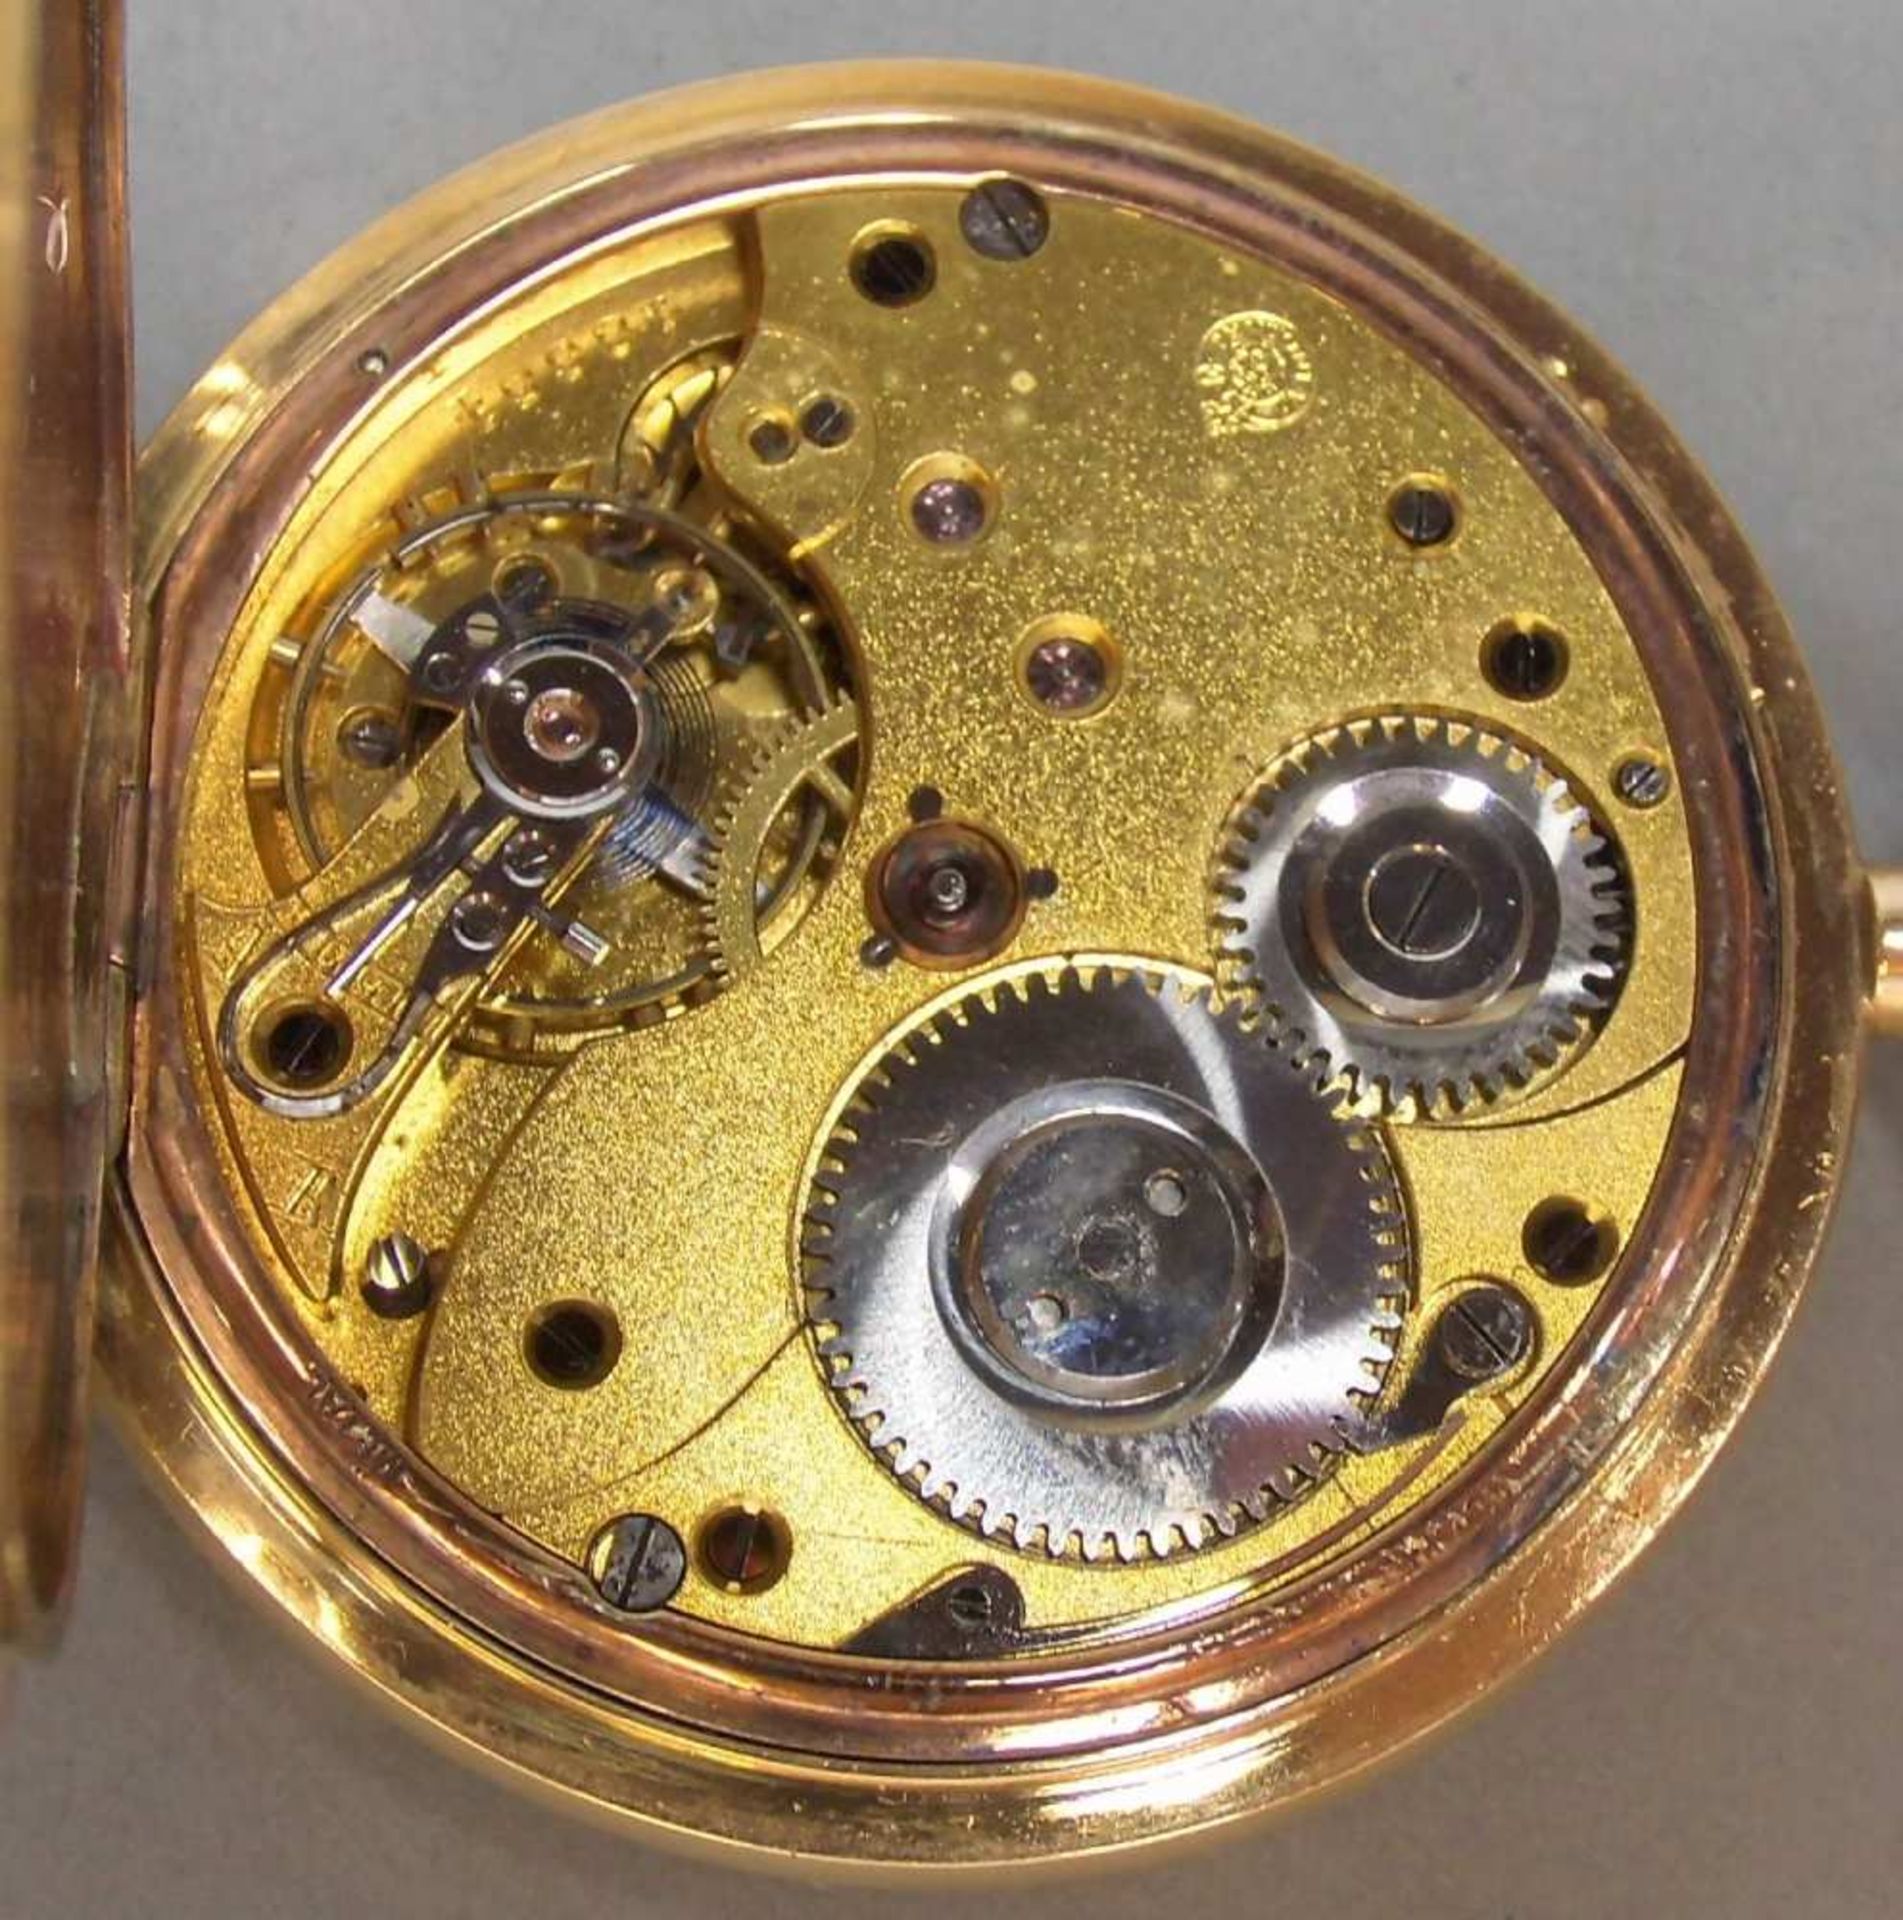 TASCHENUHR / pocketwatch, 14 kt. Gold, Staubdeckel Metall. Weißes Zifferblatt, kleine Sekunde bei - Image 4 of 7